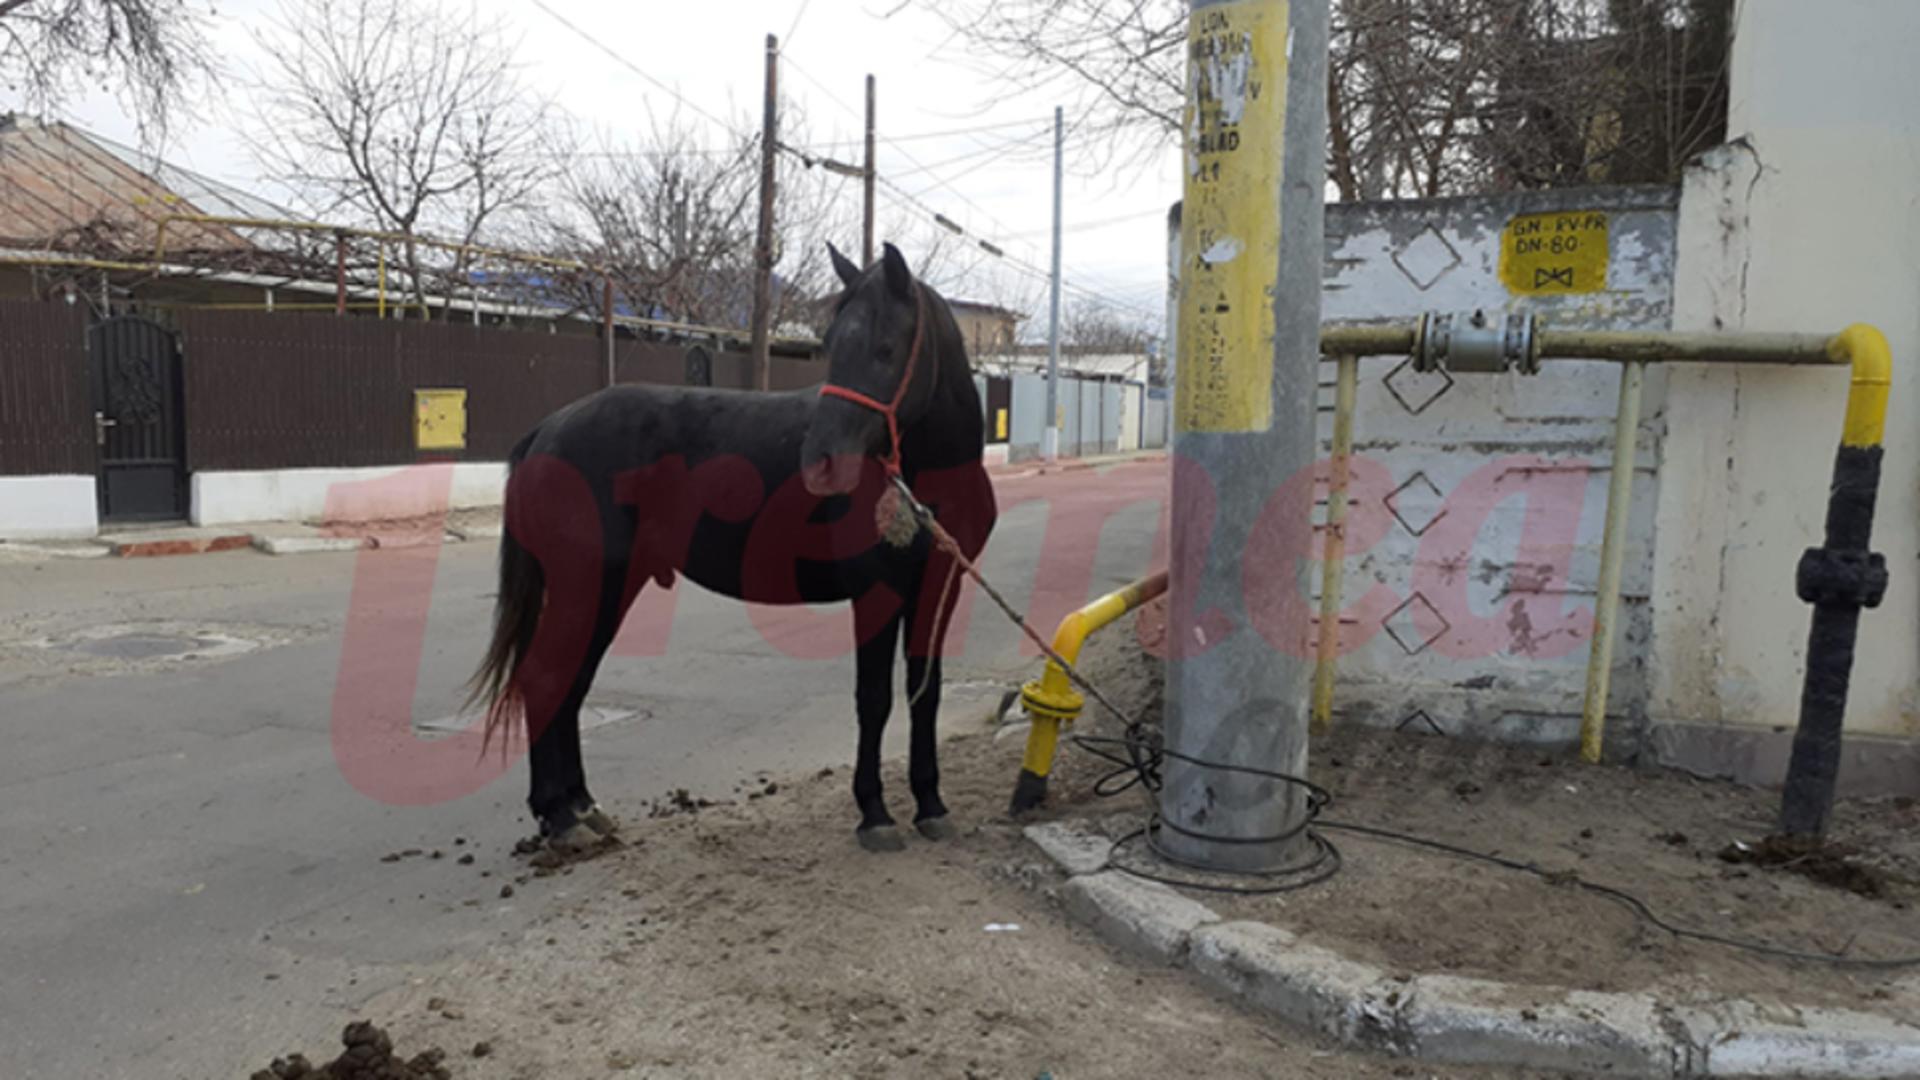 Cal abandonat pe străzile din Bârlad, salvat de polițiști și de jurnaliști